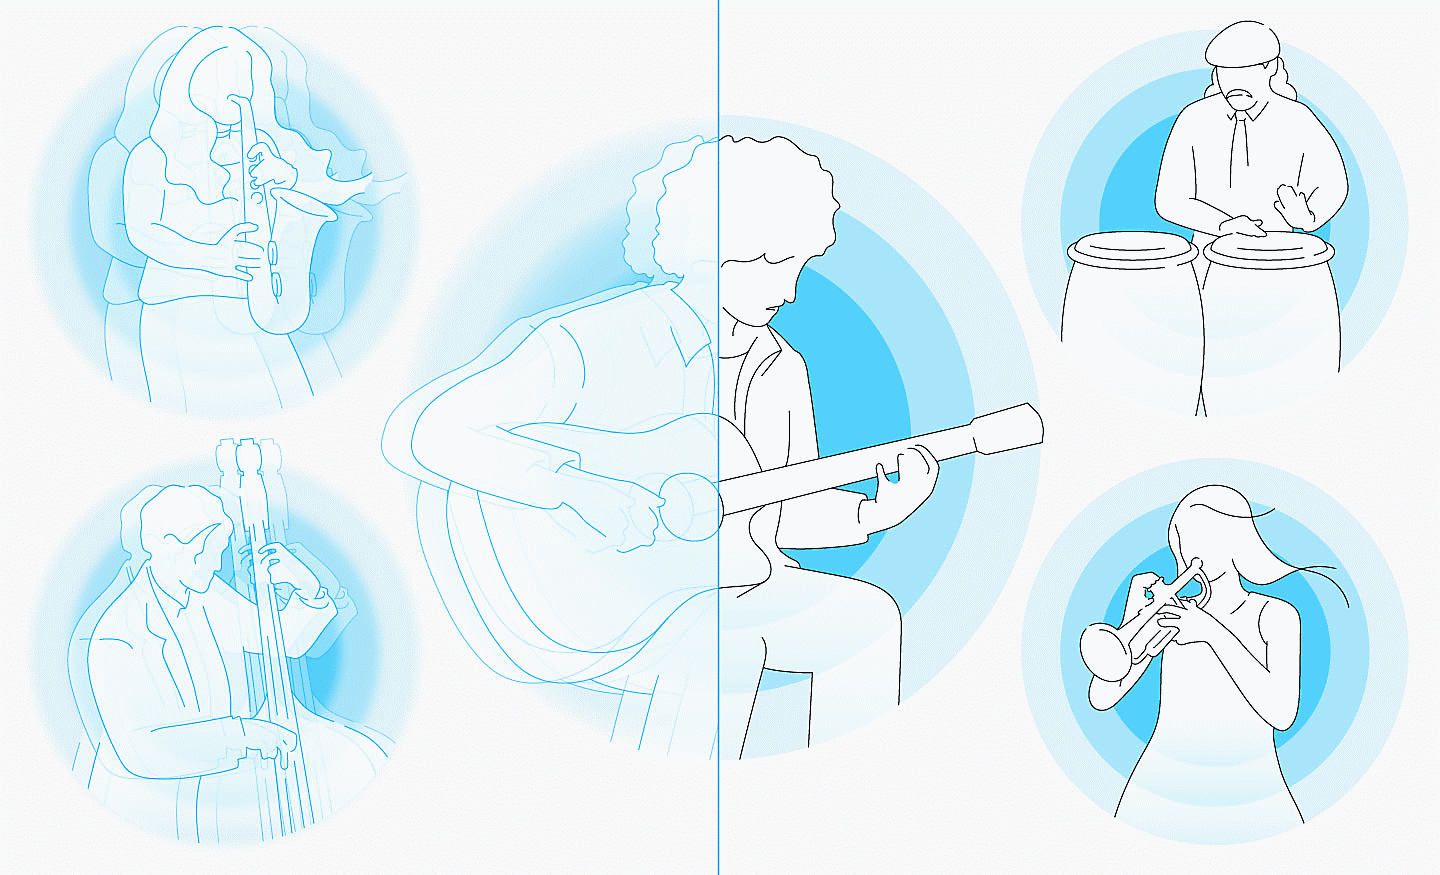 Slika na kojoj ljudi sviraju muzičke instrumente dok se iza njih vide plavi krugovi, leva strana je zamućena, a desna je jasna